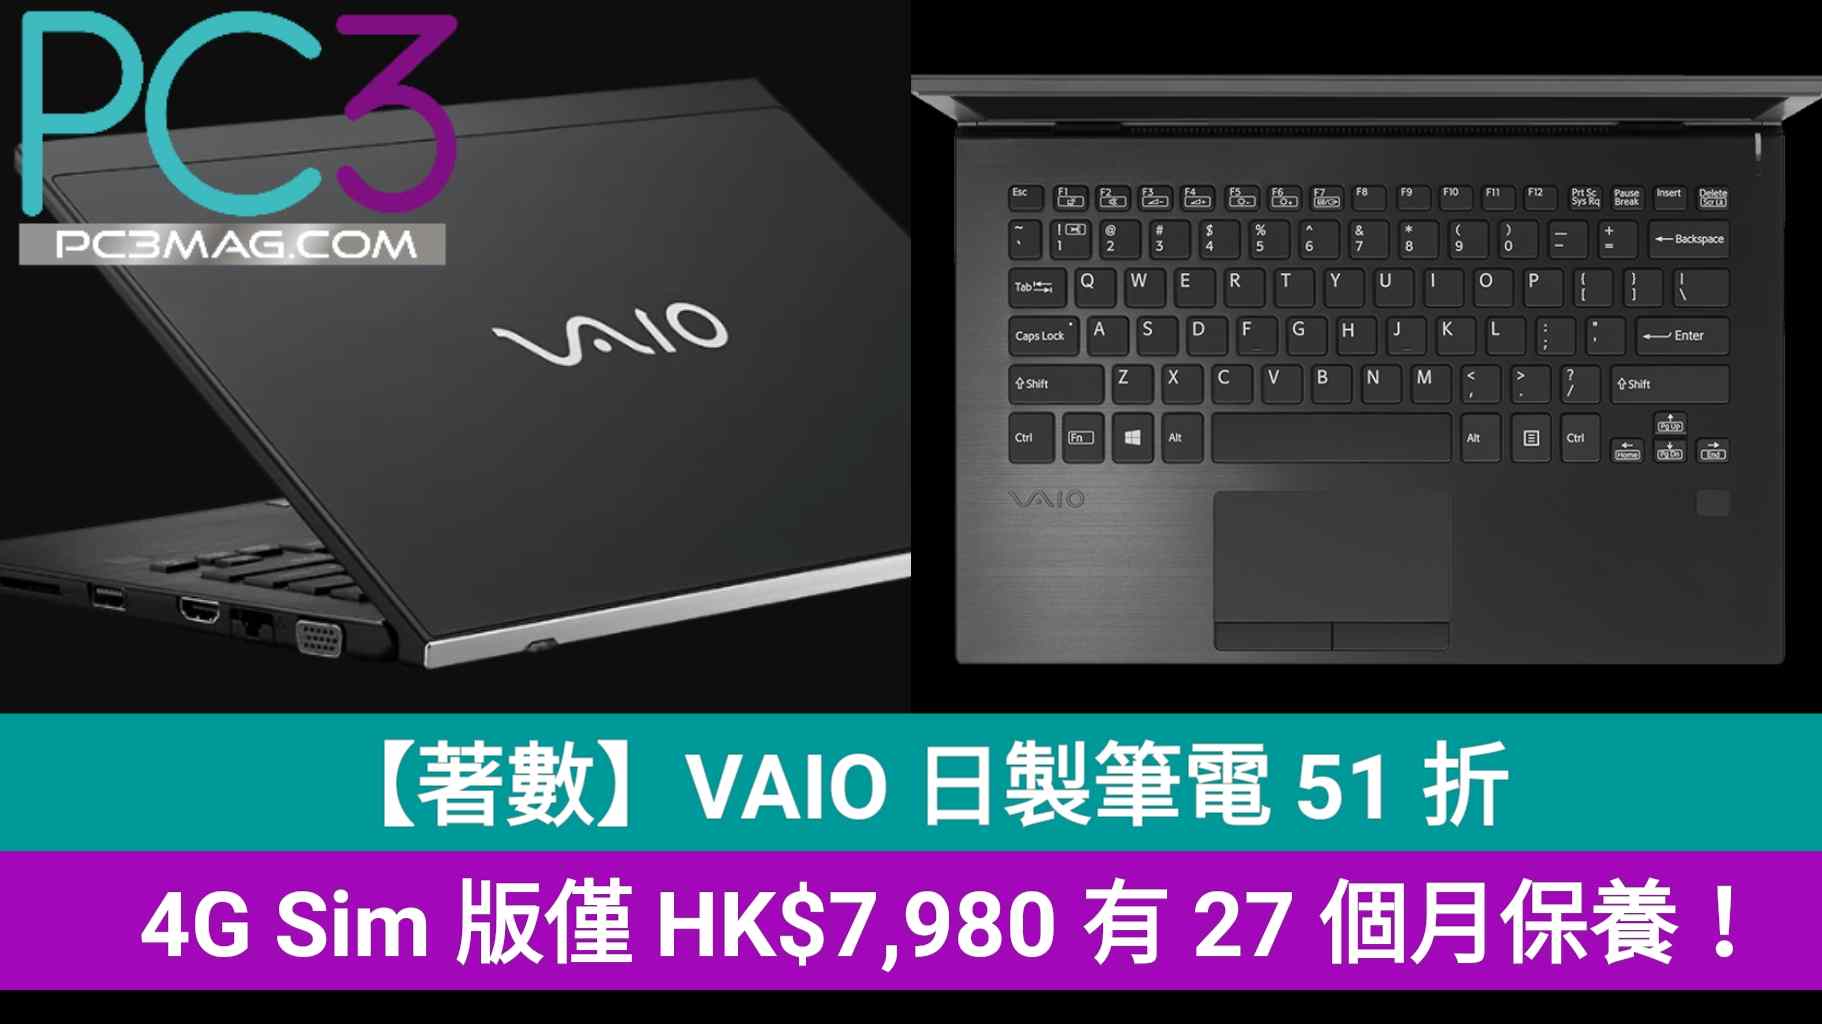 著數】VAIO 日製筆電51 折，4G Sim 版僅HK$7,980 有27 個月保養！ – PC3 Magazine